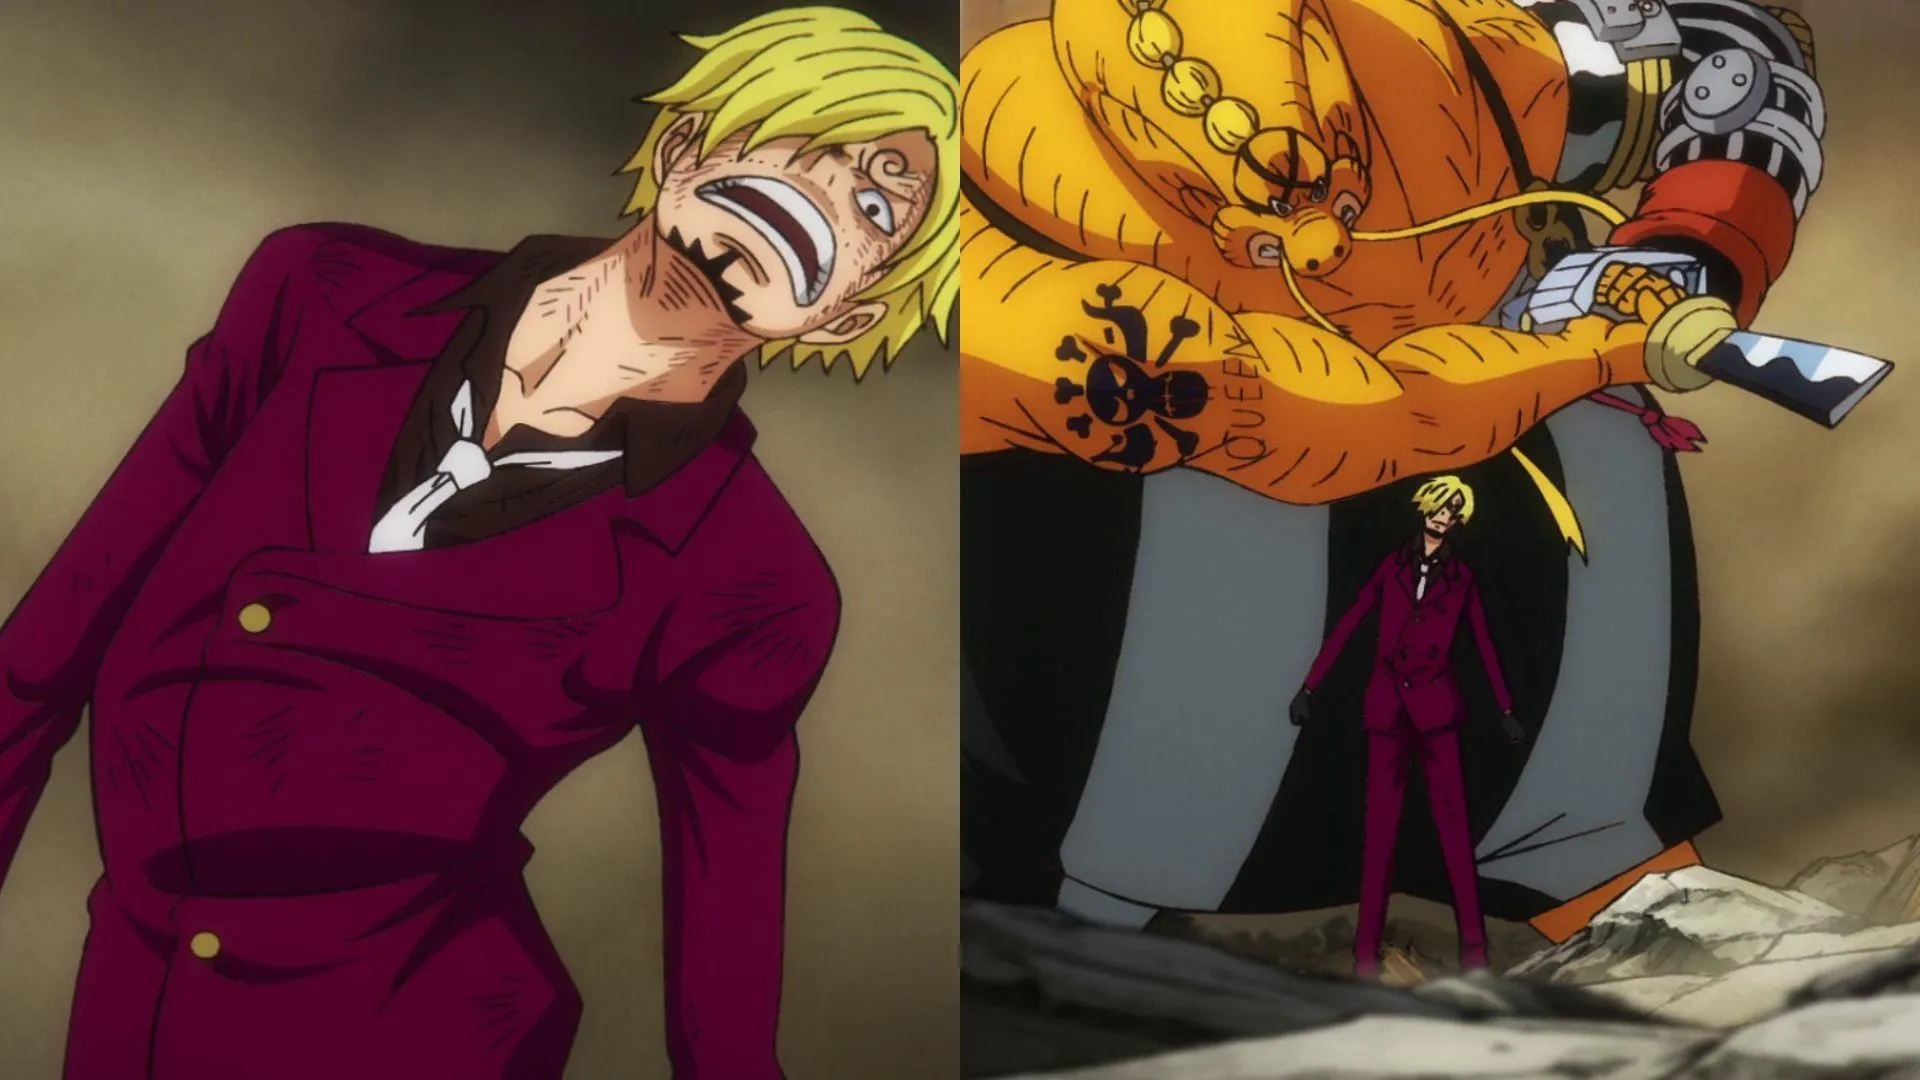 O momento em que o poder de Sanji finalmente começou (Imagem via Toei Animation, One Piece)